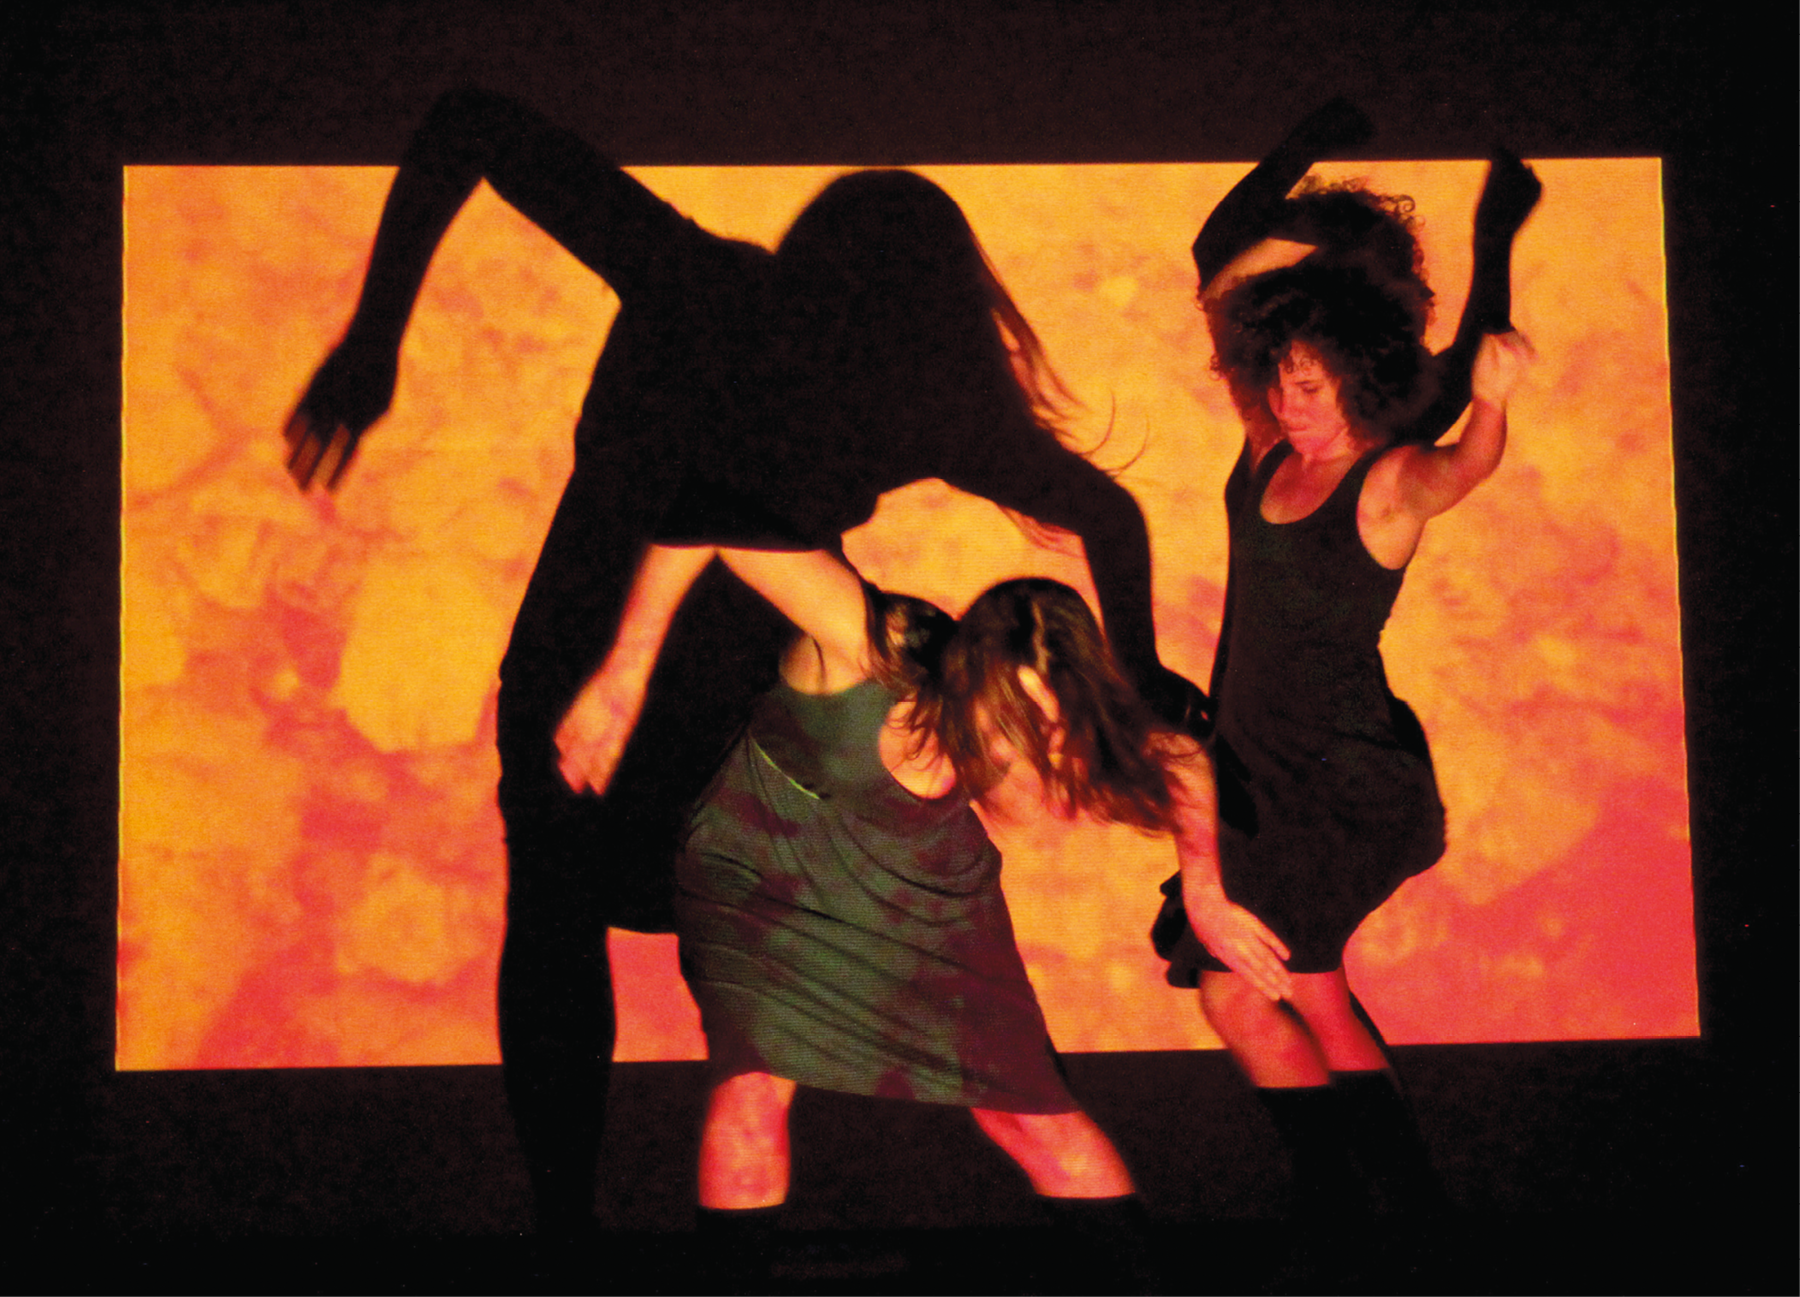 Fotografia. Duas mulheres dançam em frente a um telão no qual é projetado um desenho abstrato em tons de laranja. Elas vestem vestidos escuros e estão em movimento. Com a luz, suas sombras são projetadas no telão.